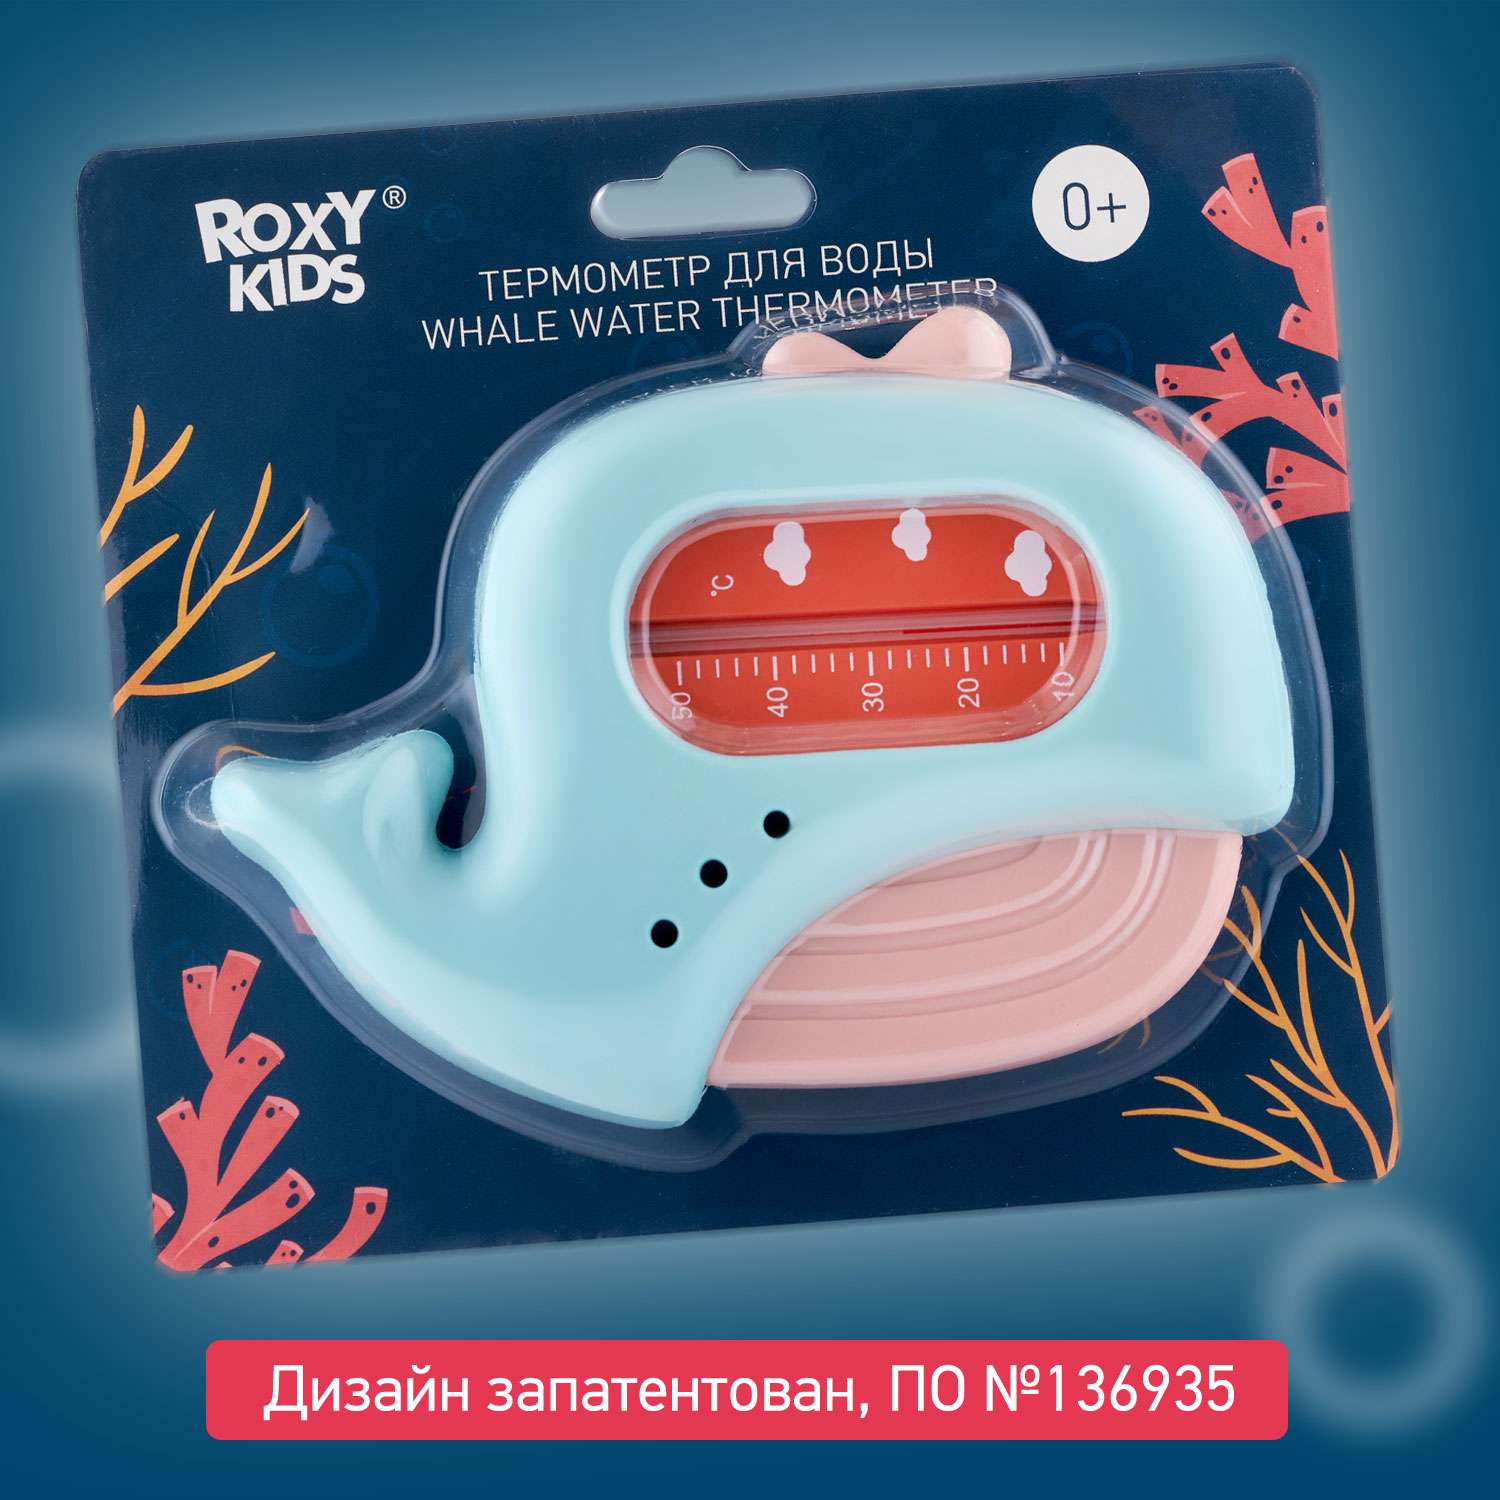 Термометр детский для воды ROXY-KIDS Кит для купания цет голубой розовый - фото 7